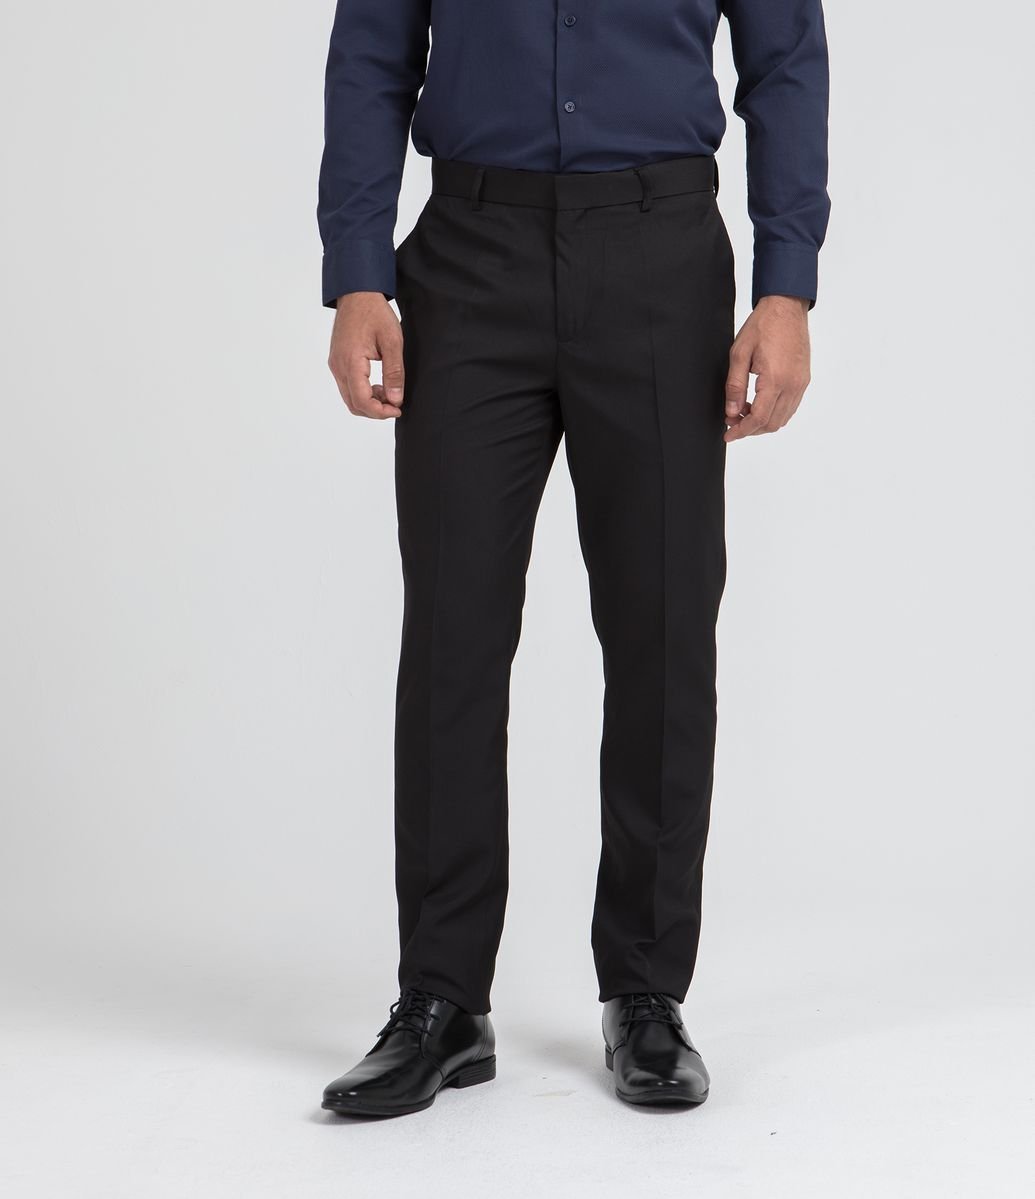 calça social masculina com regulagem na cintura